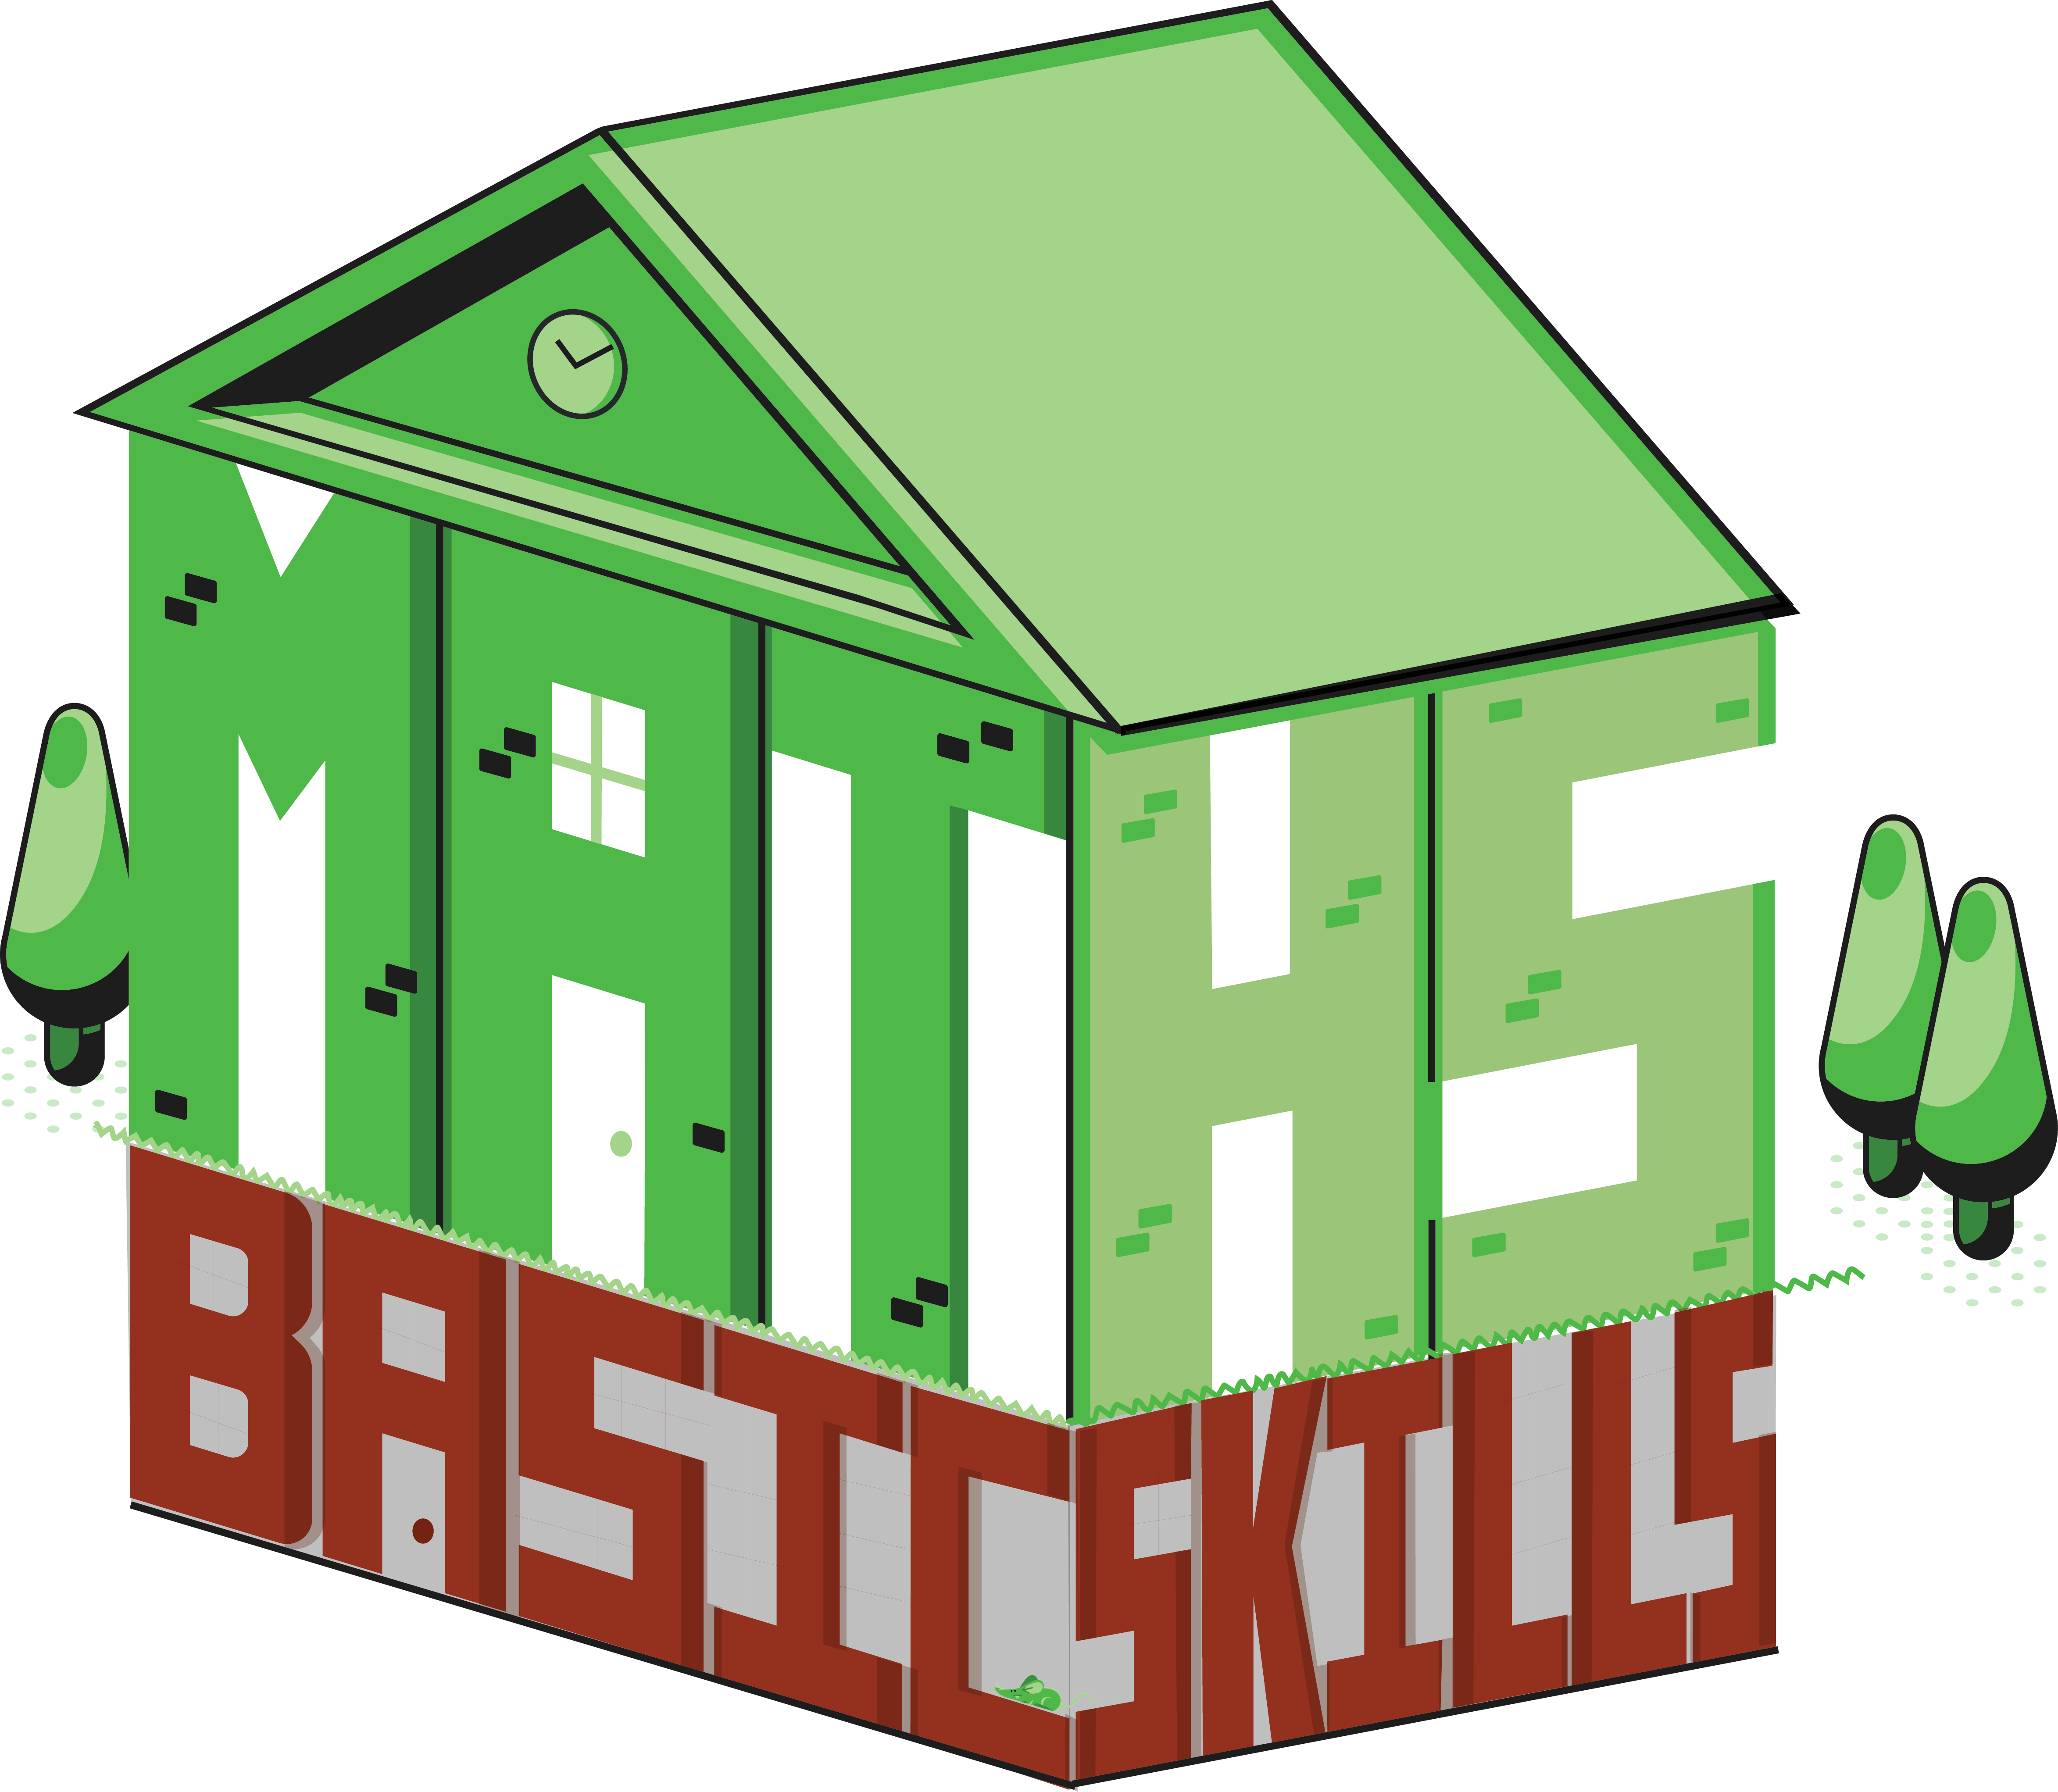 Maths Building